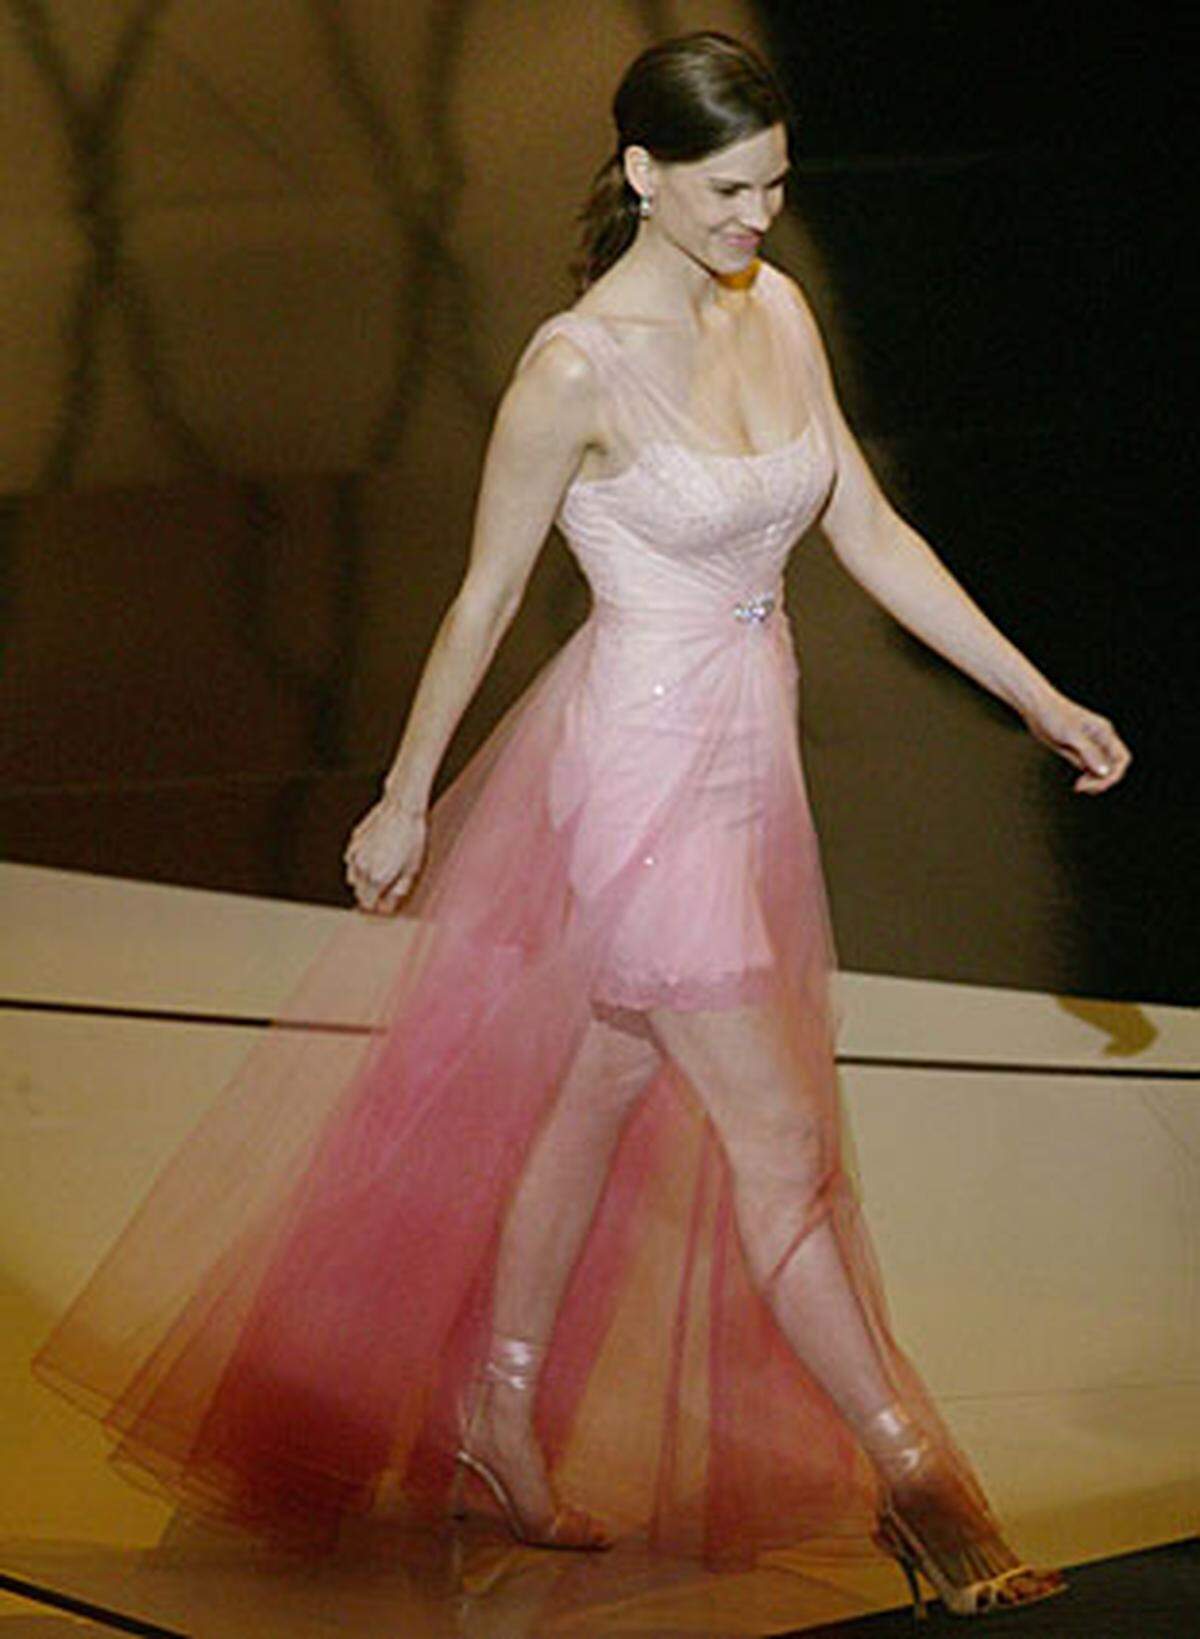 Eine Lektion in Sachen Abendgarderobe für die zweifach Oscar-prämierte Hilary Swank: Die Kleider müssen lang sein. Und transparenter Stoff gilt nicht (siehe Cher).